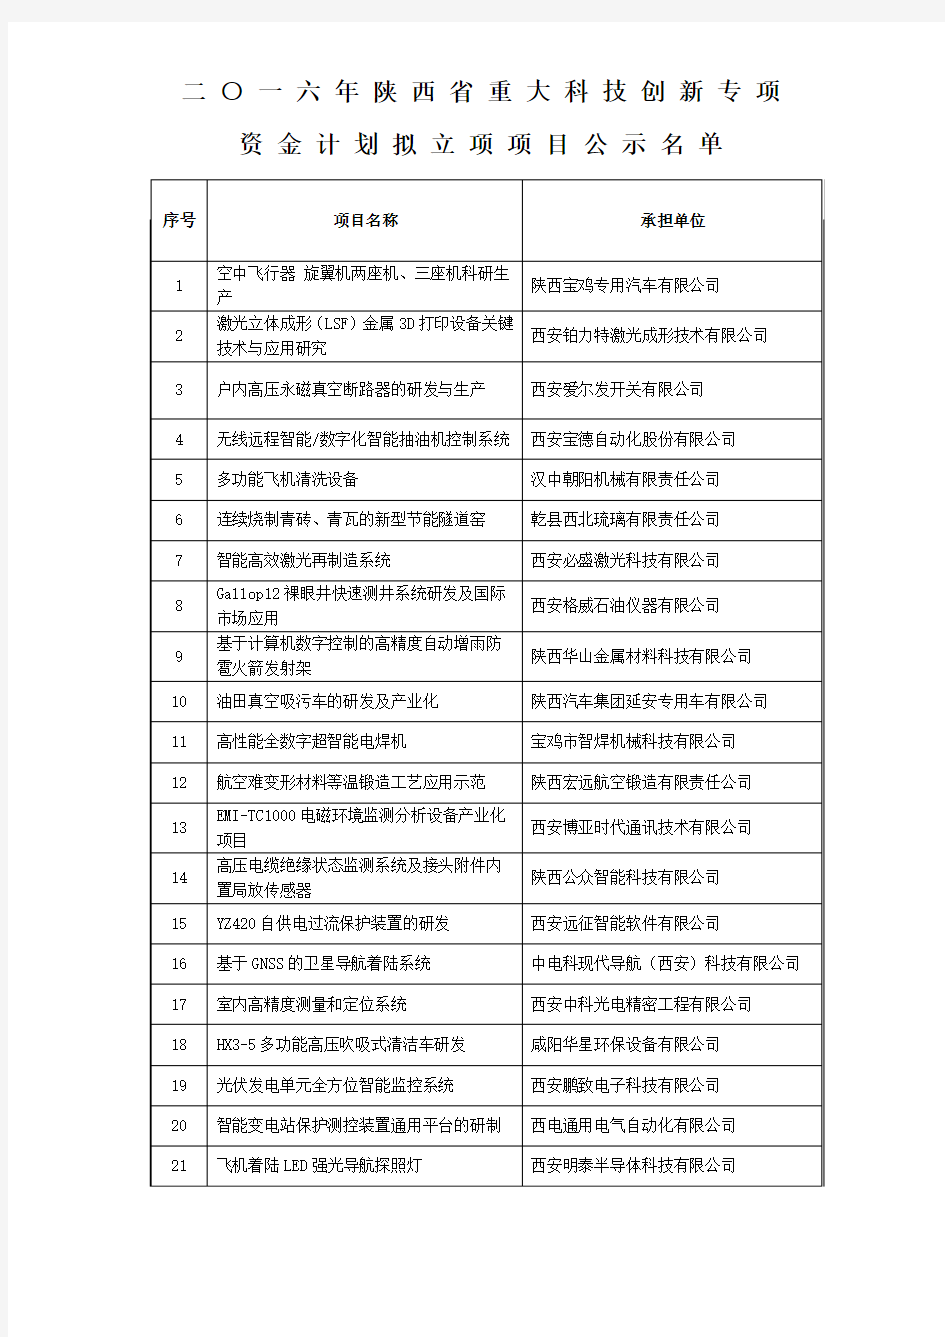 陕西省重大科技创新专项资金计划拟立项项目公示名单分析